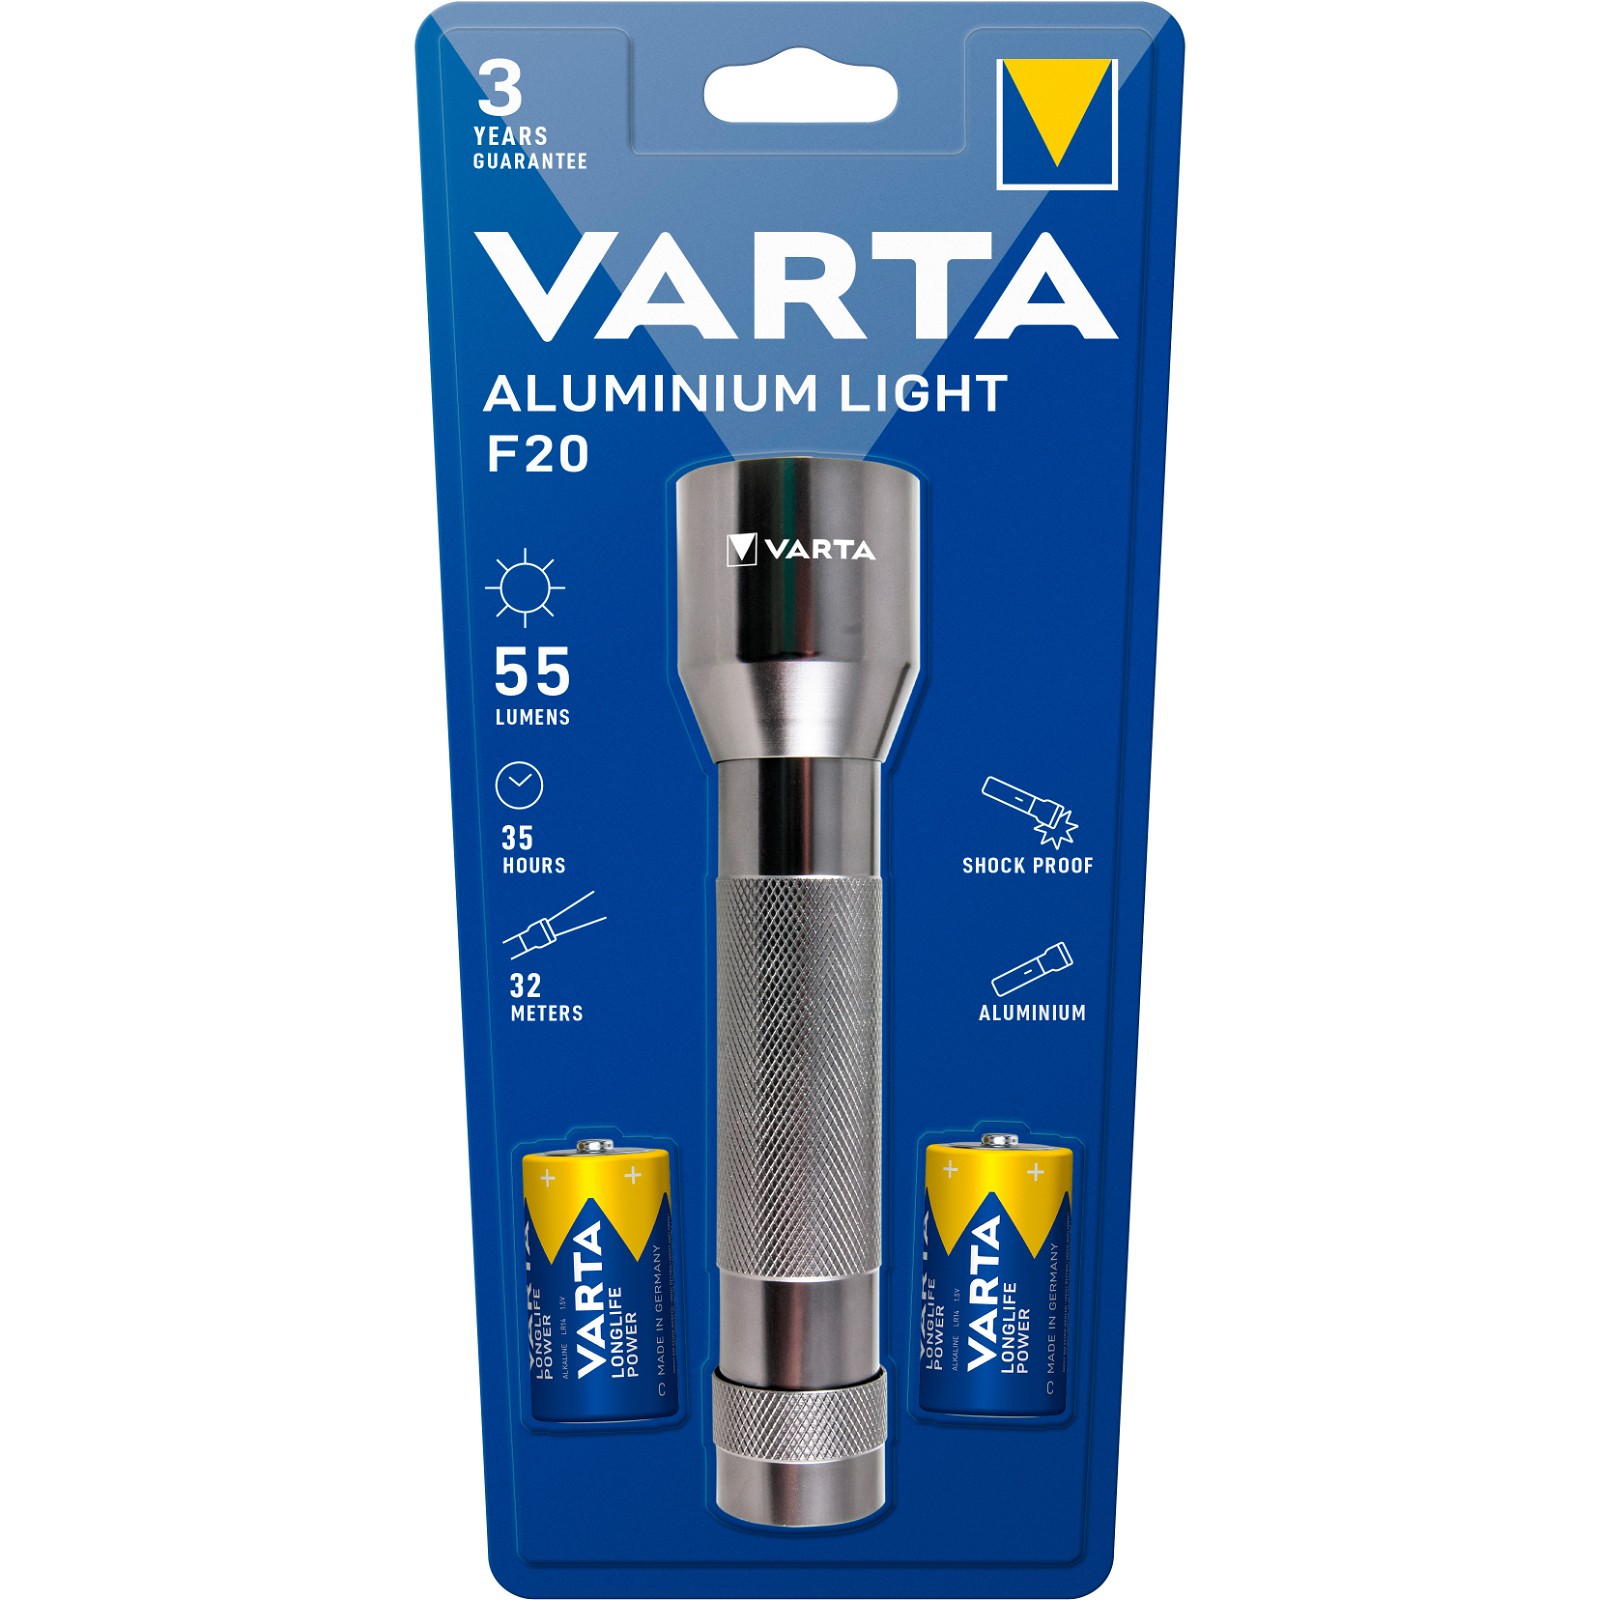 VARTA F20 lygte inkl. 2 x C-batterier